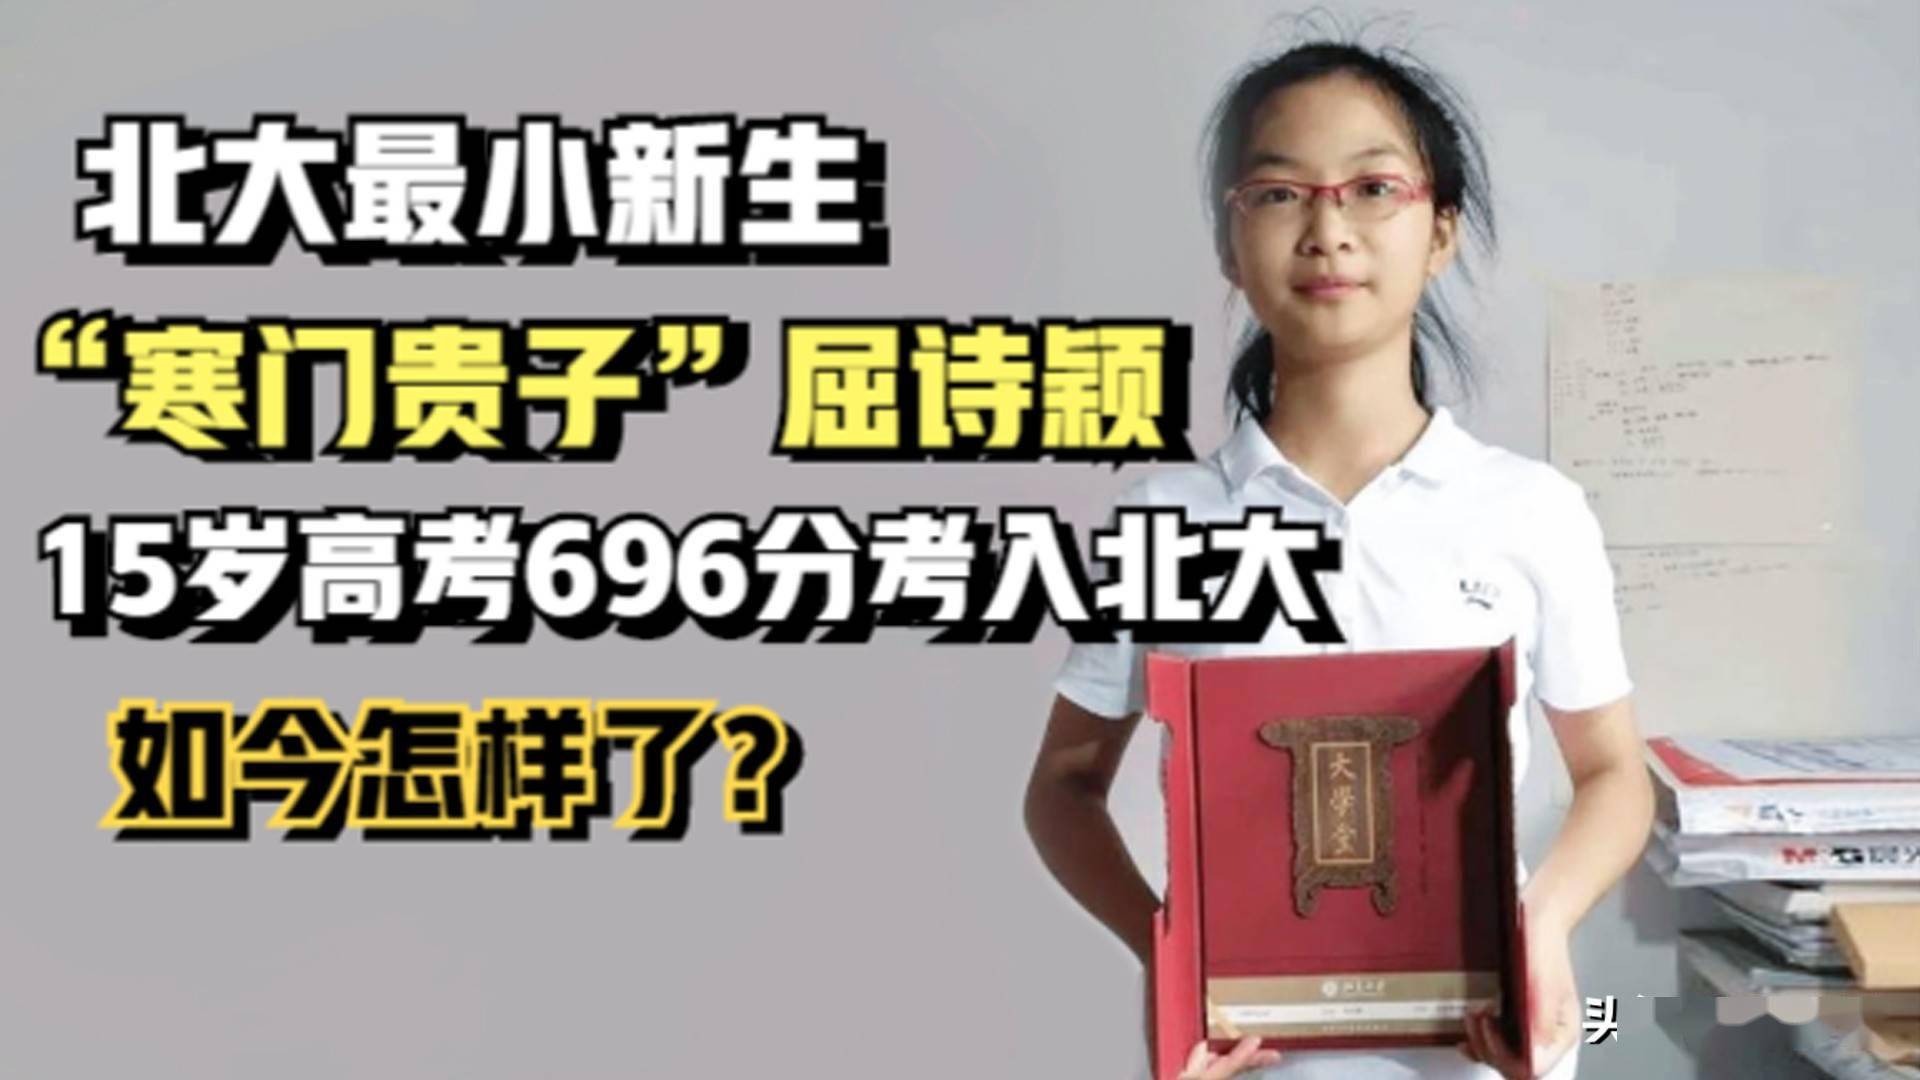 寒门贵子屈诗颖15岁高考696分考入北京大学如今怎样了